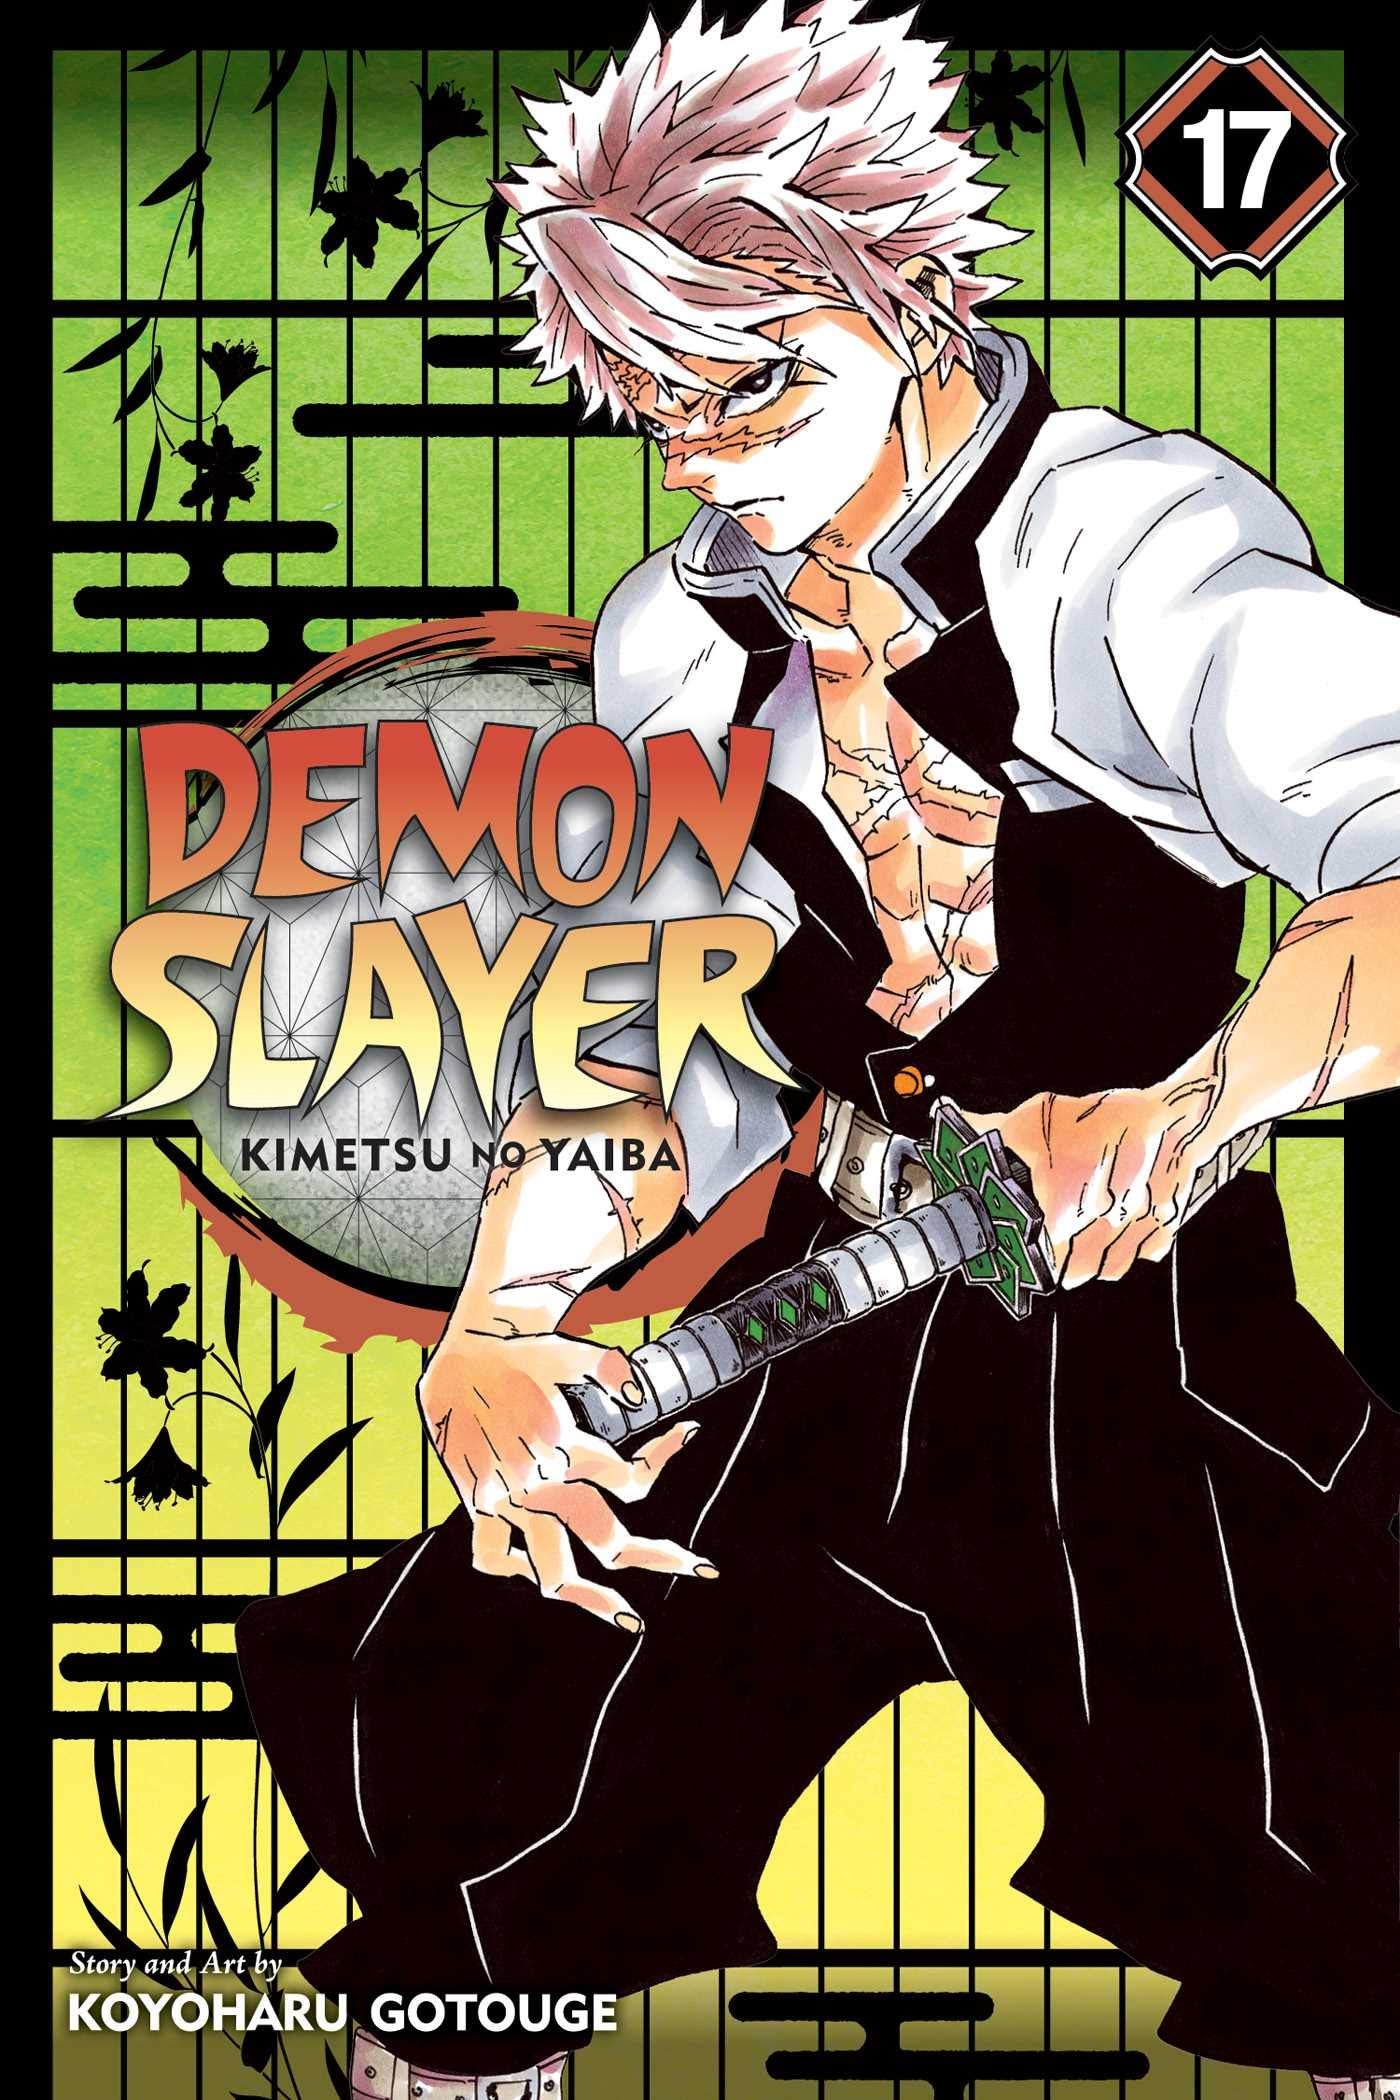 DEMON SLAYER KIMETSU NO YAIBA VOLUME 17